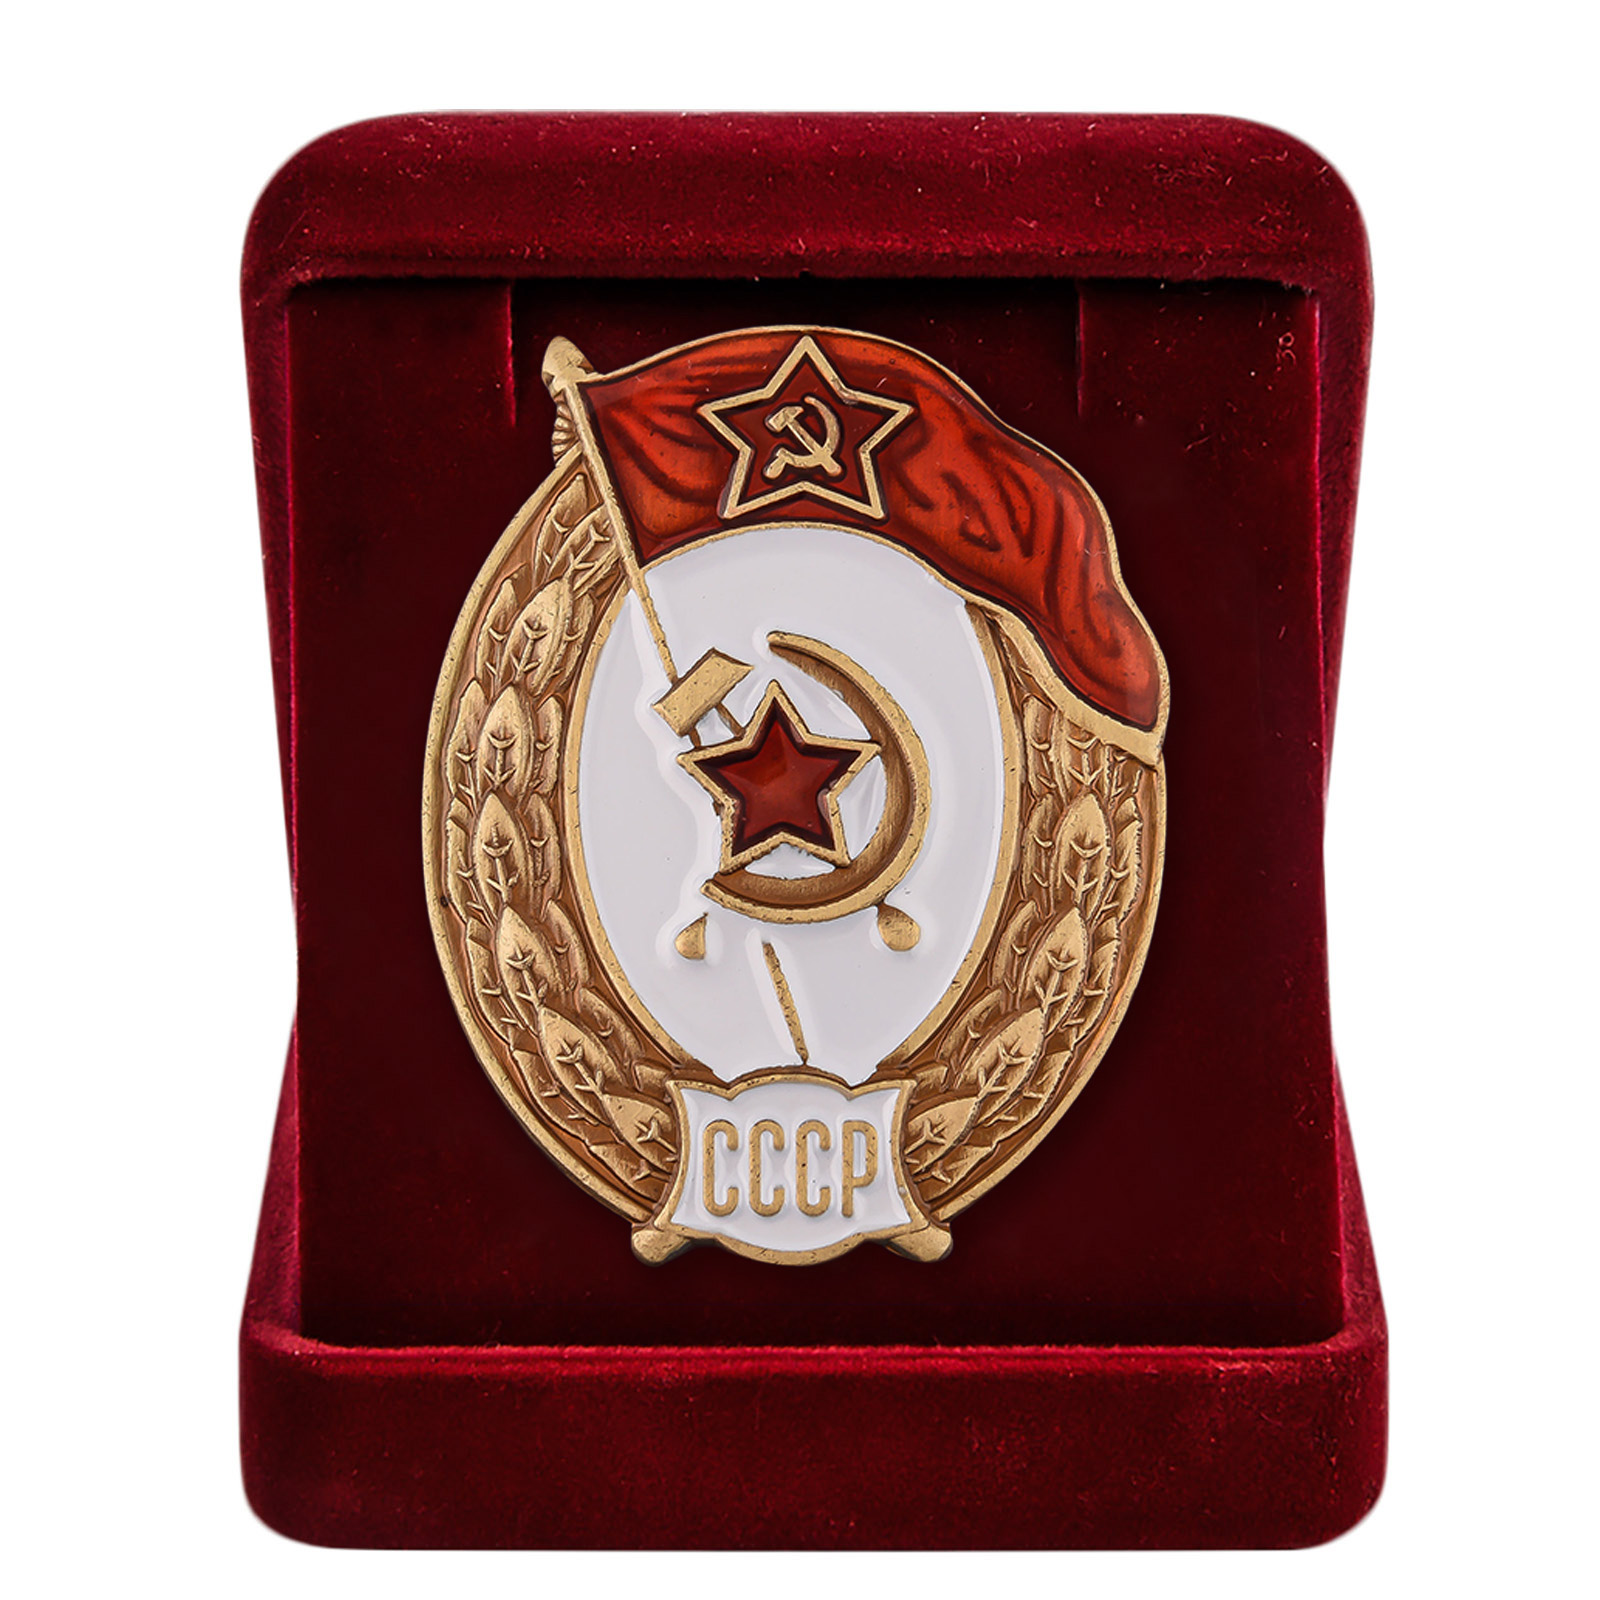 Знак об окончании Интендантских, финансовых или пожарных военных училищ СССР